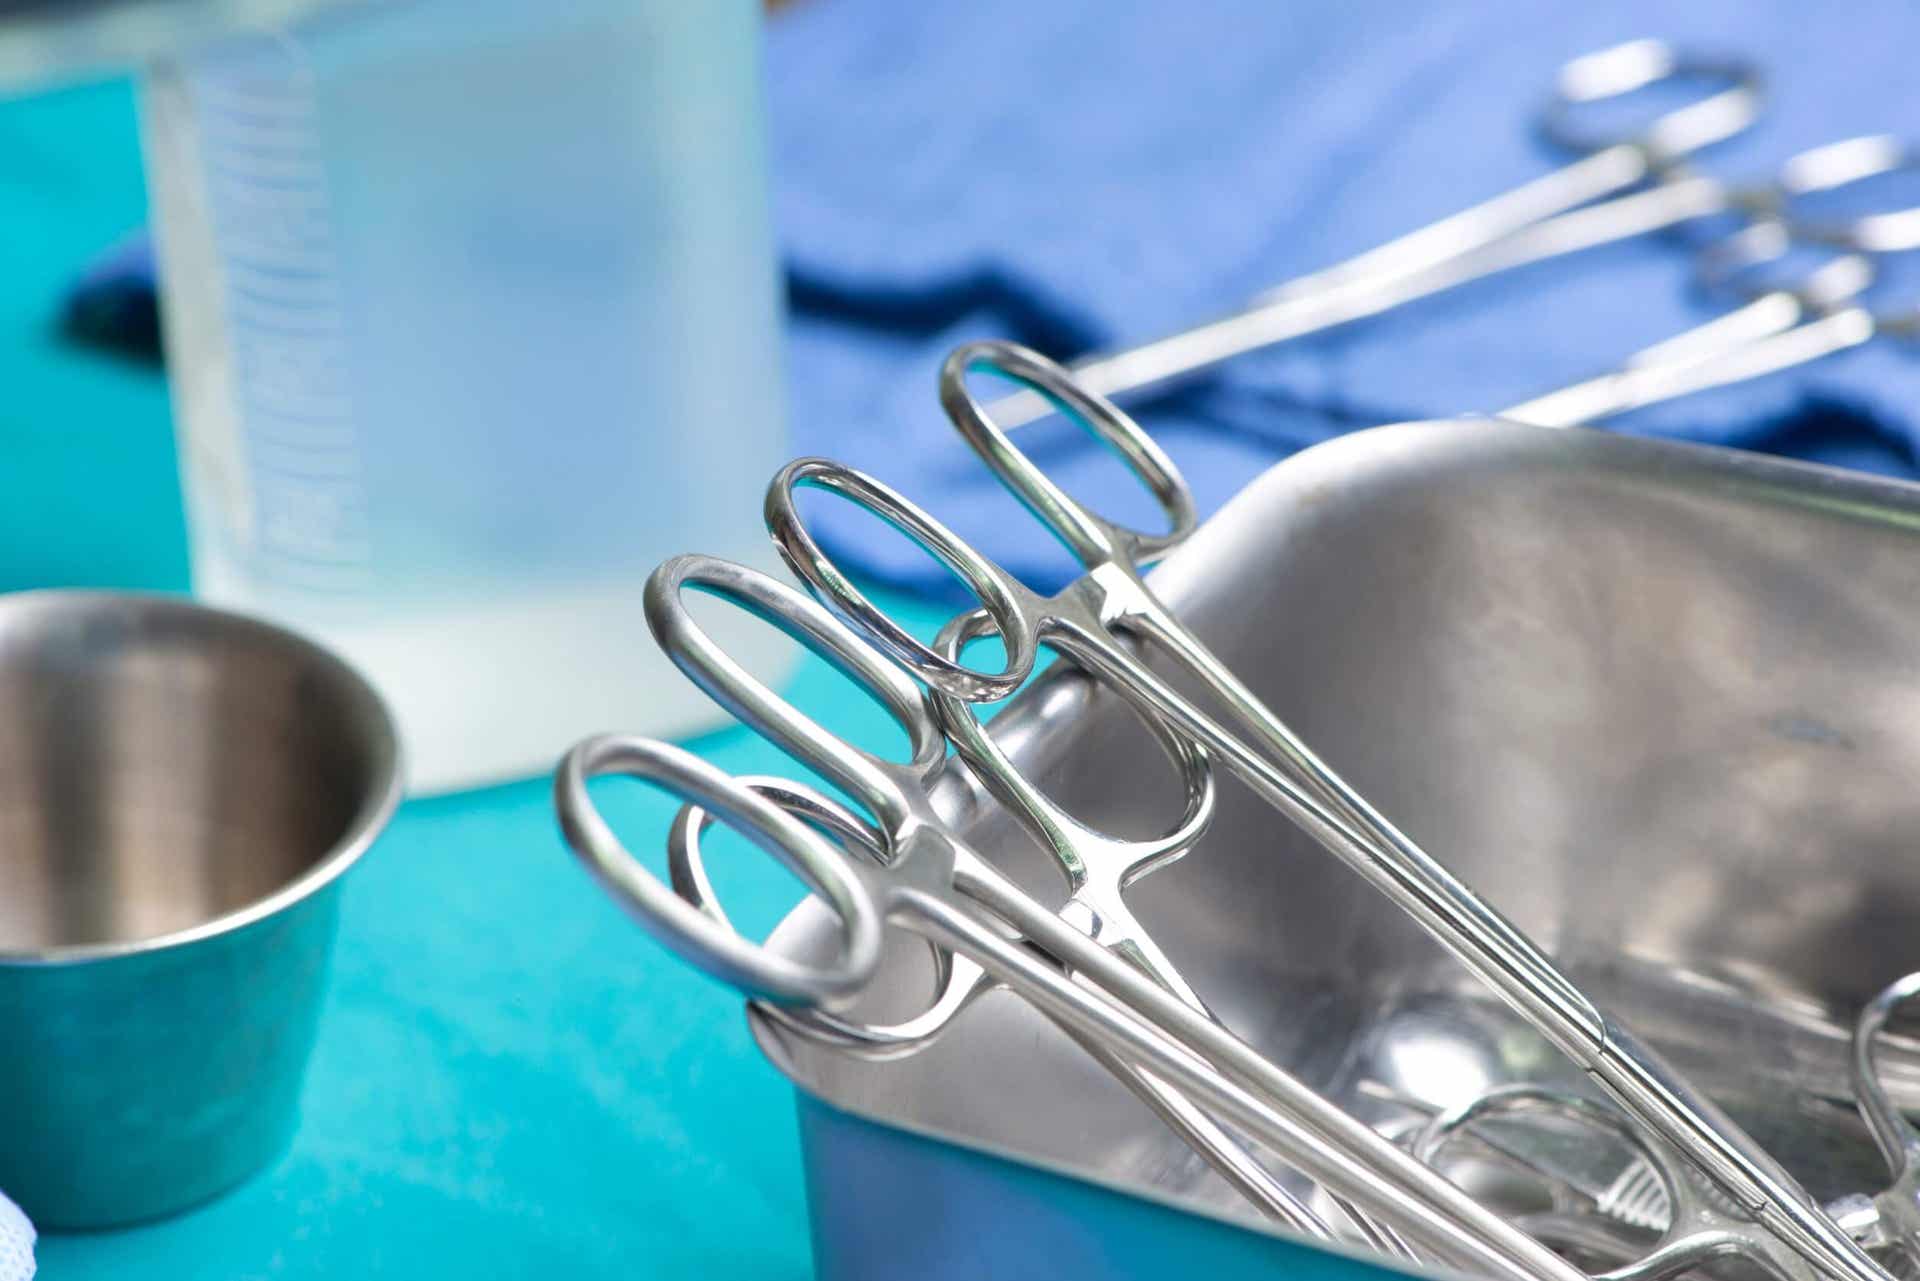 Los implantes mamarios se colocan mediante una cirugía